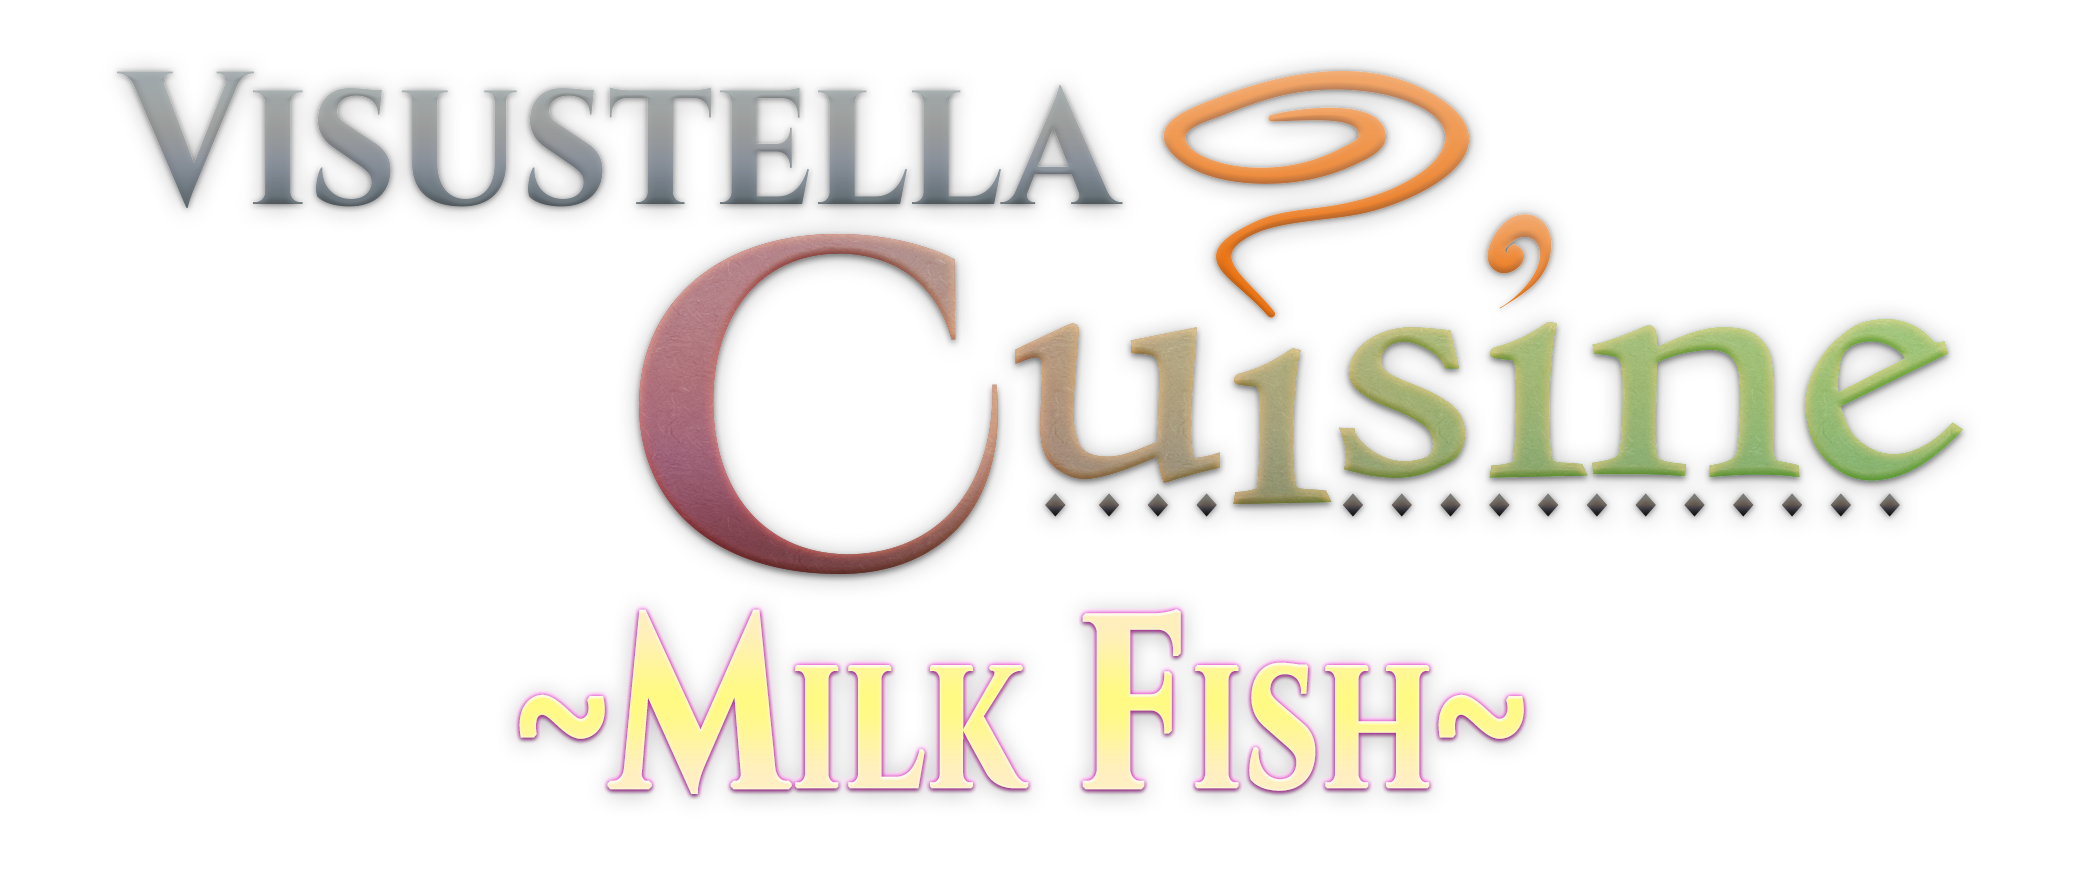 VisuStella Cuisine: Milk Fish